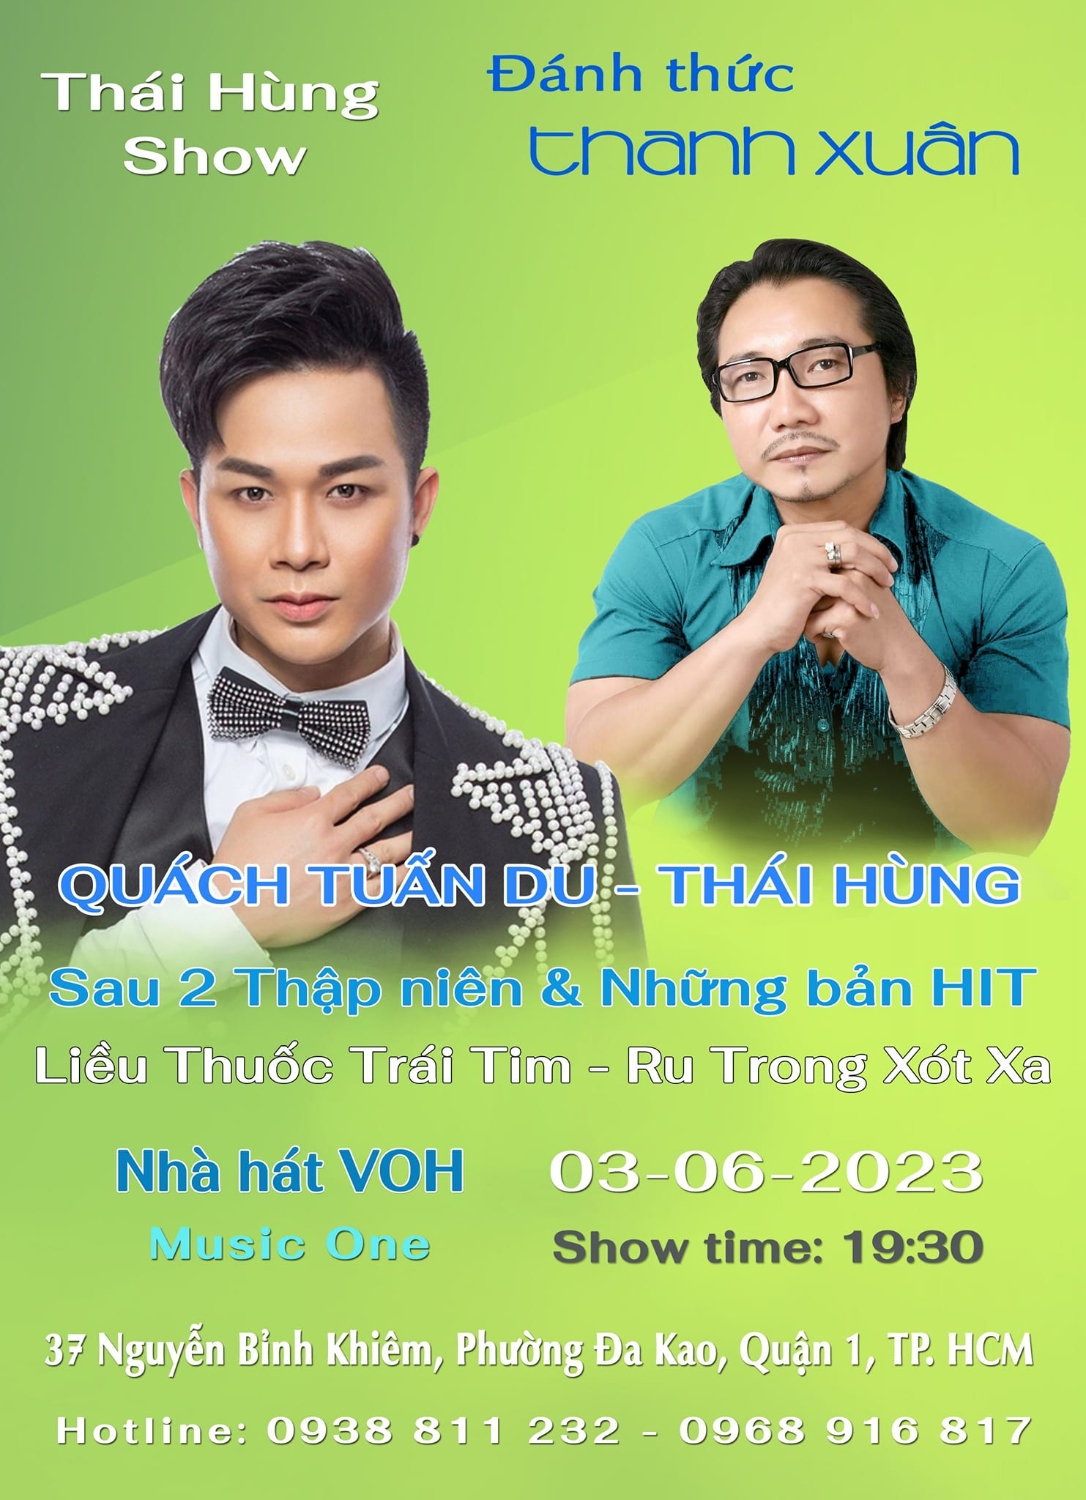 Thai Hung Show 5